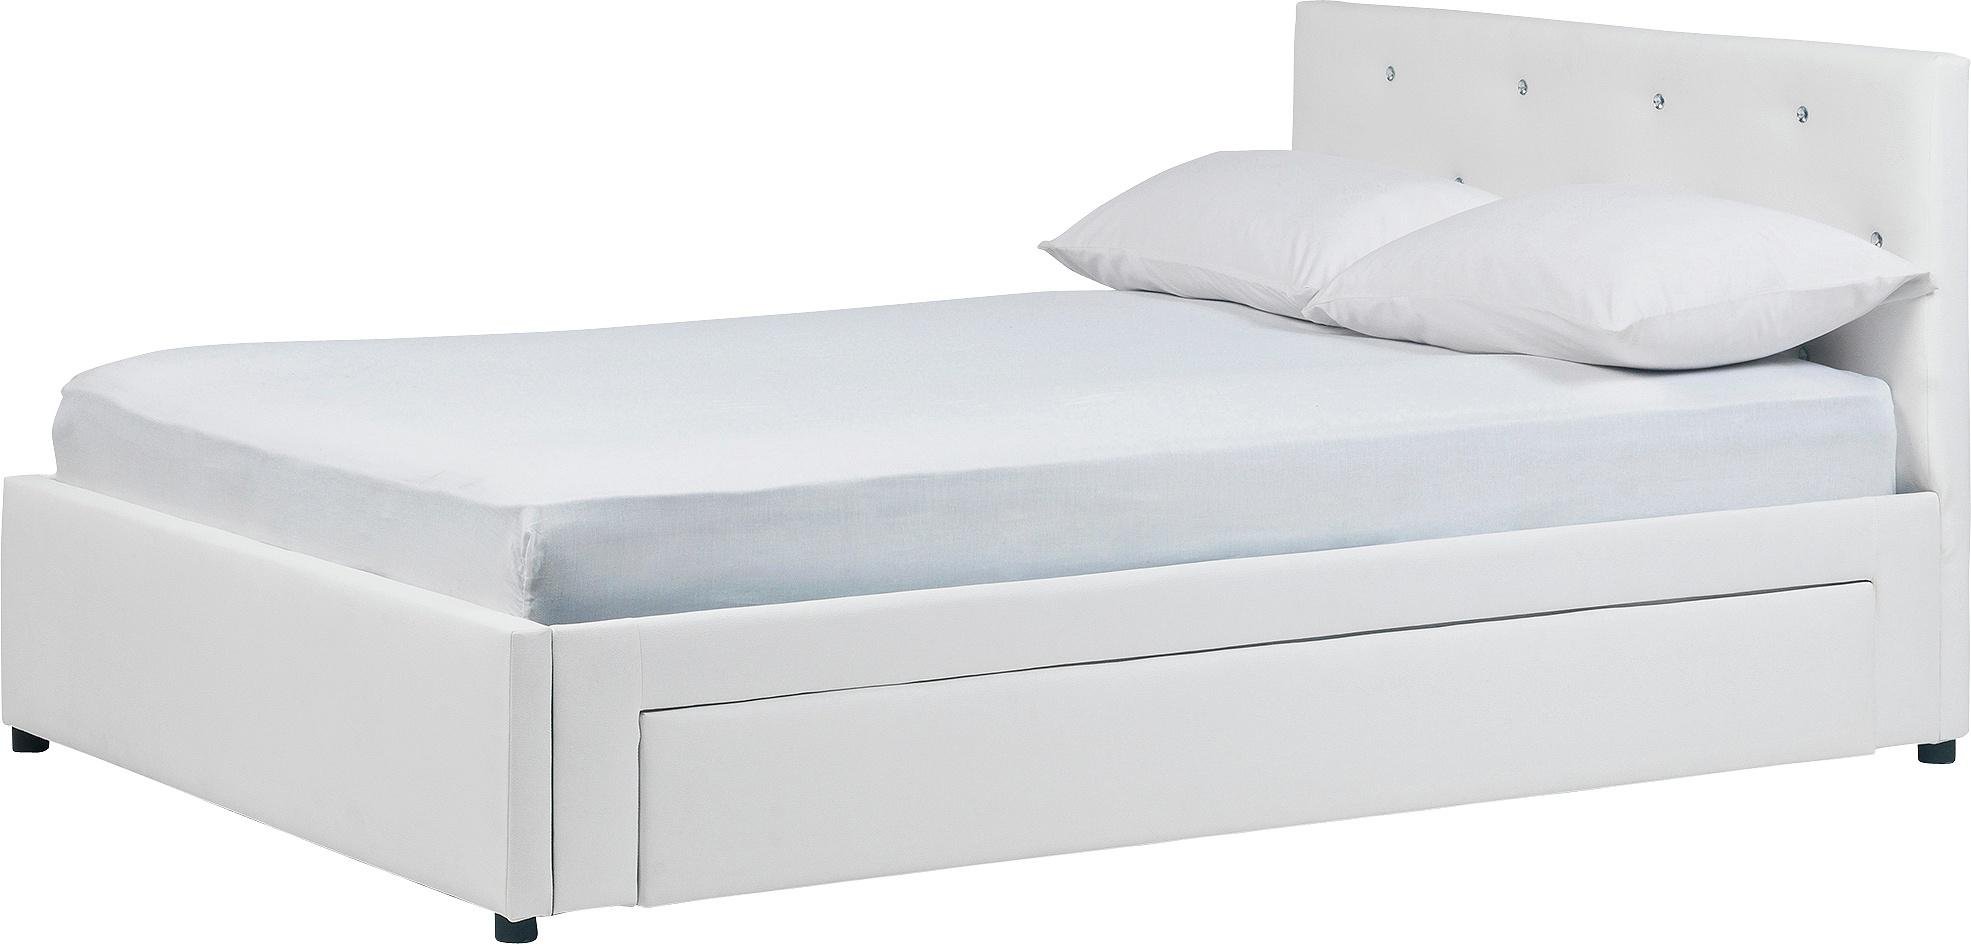 Argos Home Imelda Double 1 Drawer Bed Frame - White